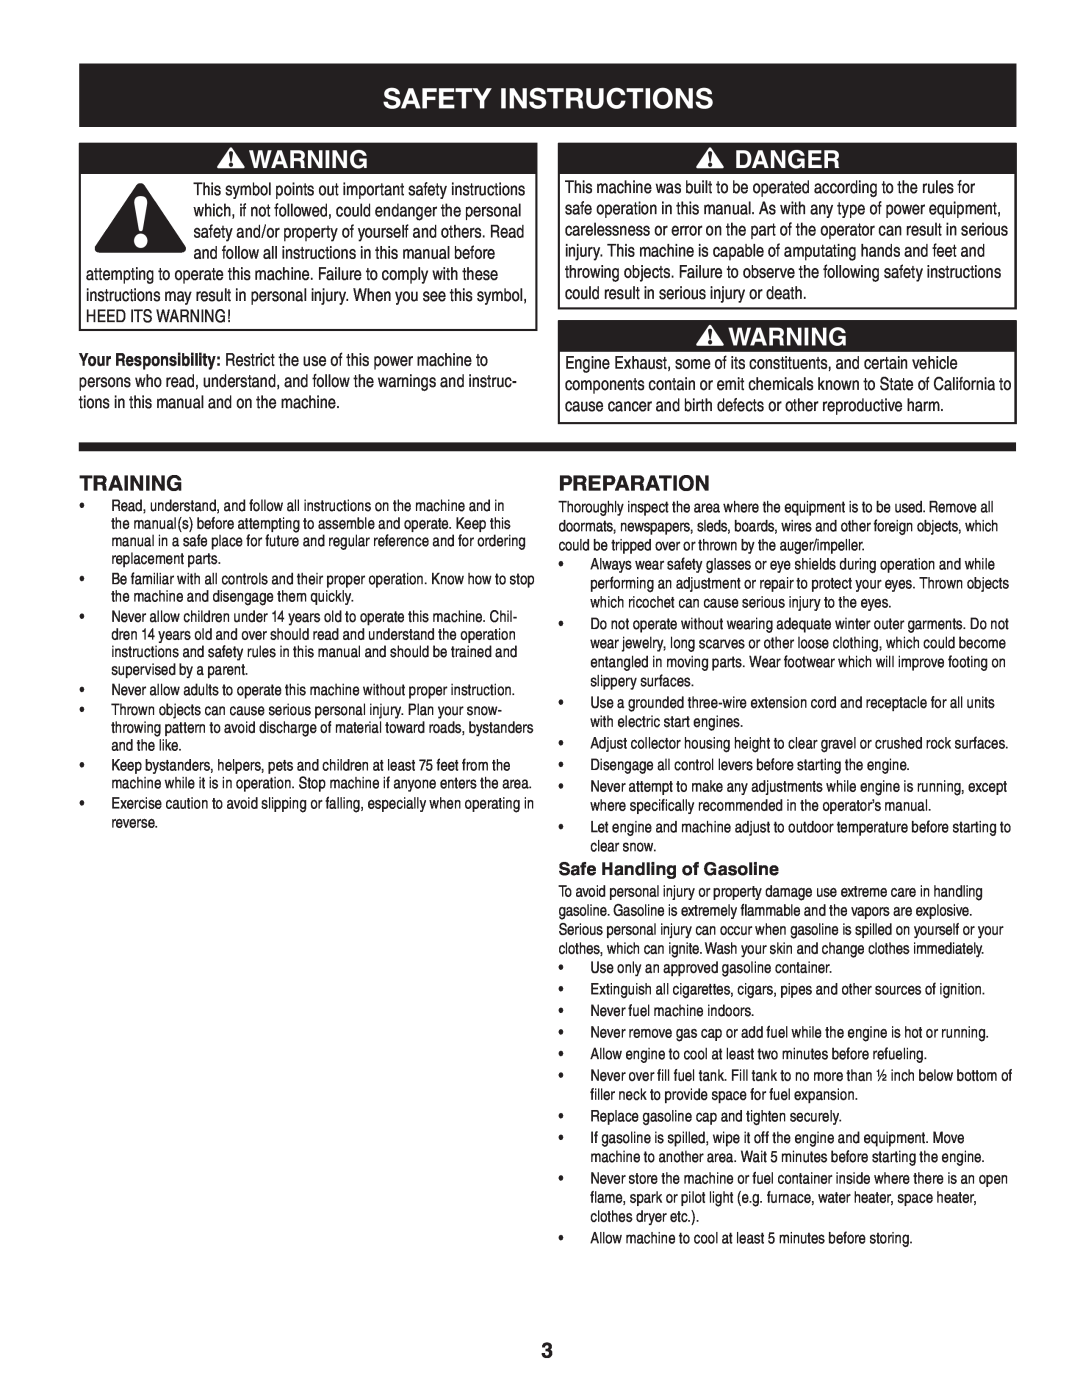 Craftsman 247.88045 manual Safety Instructions, Danger, Training, Preparation, Safe Handling of Gasoline 